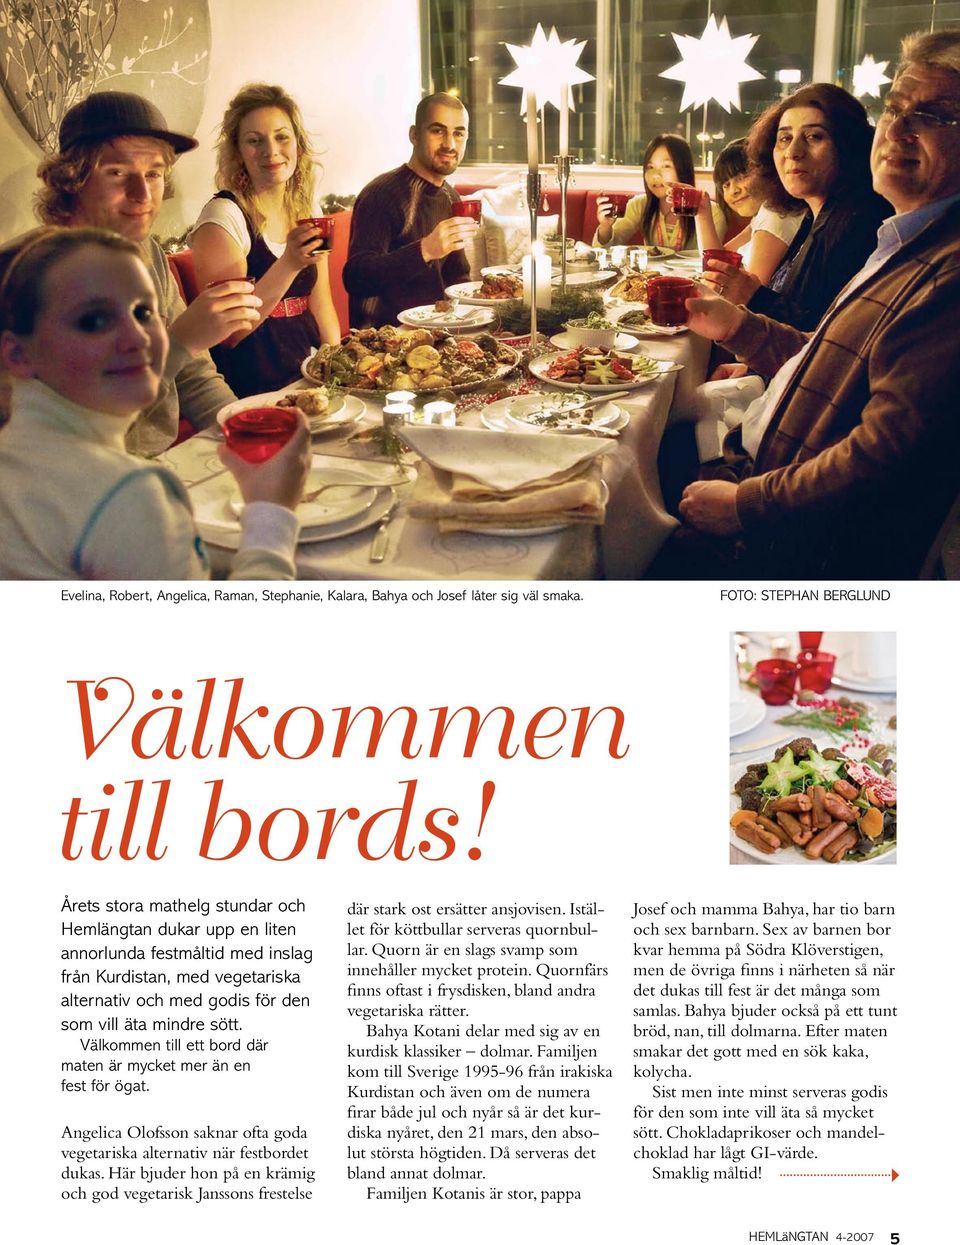 Välkommen till ett bord där maten är mycket mer än en fest för ögat. Angelica Olofsson saknar ofta goda vegetariska alternativ när festbordet dukas.